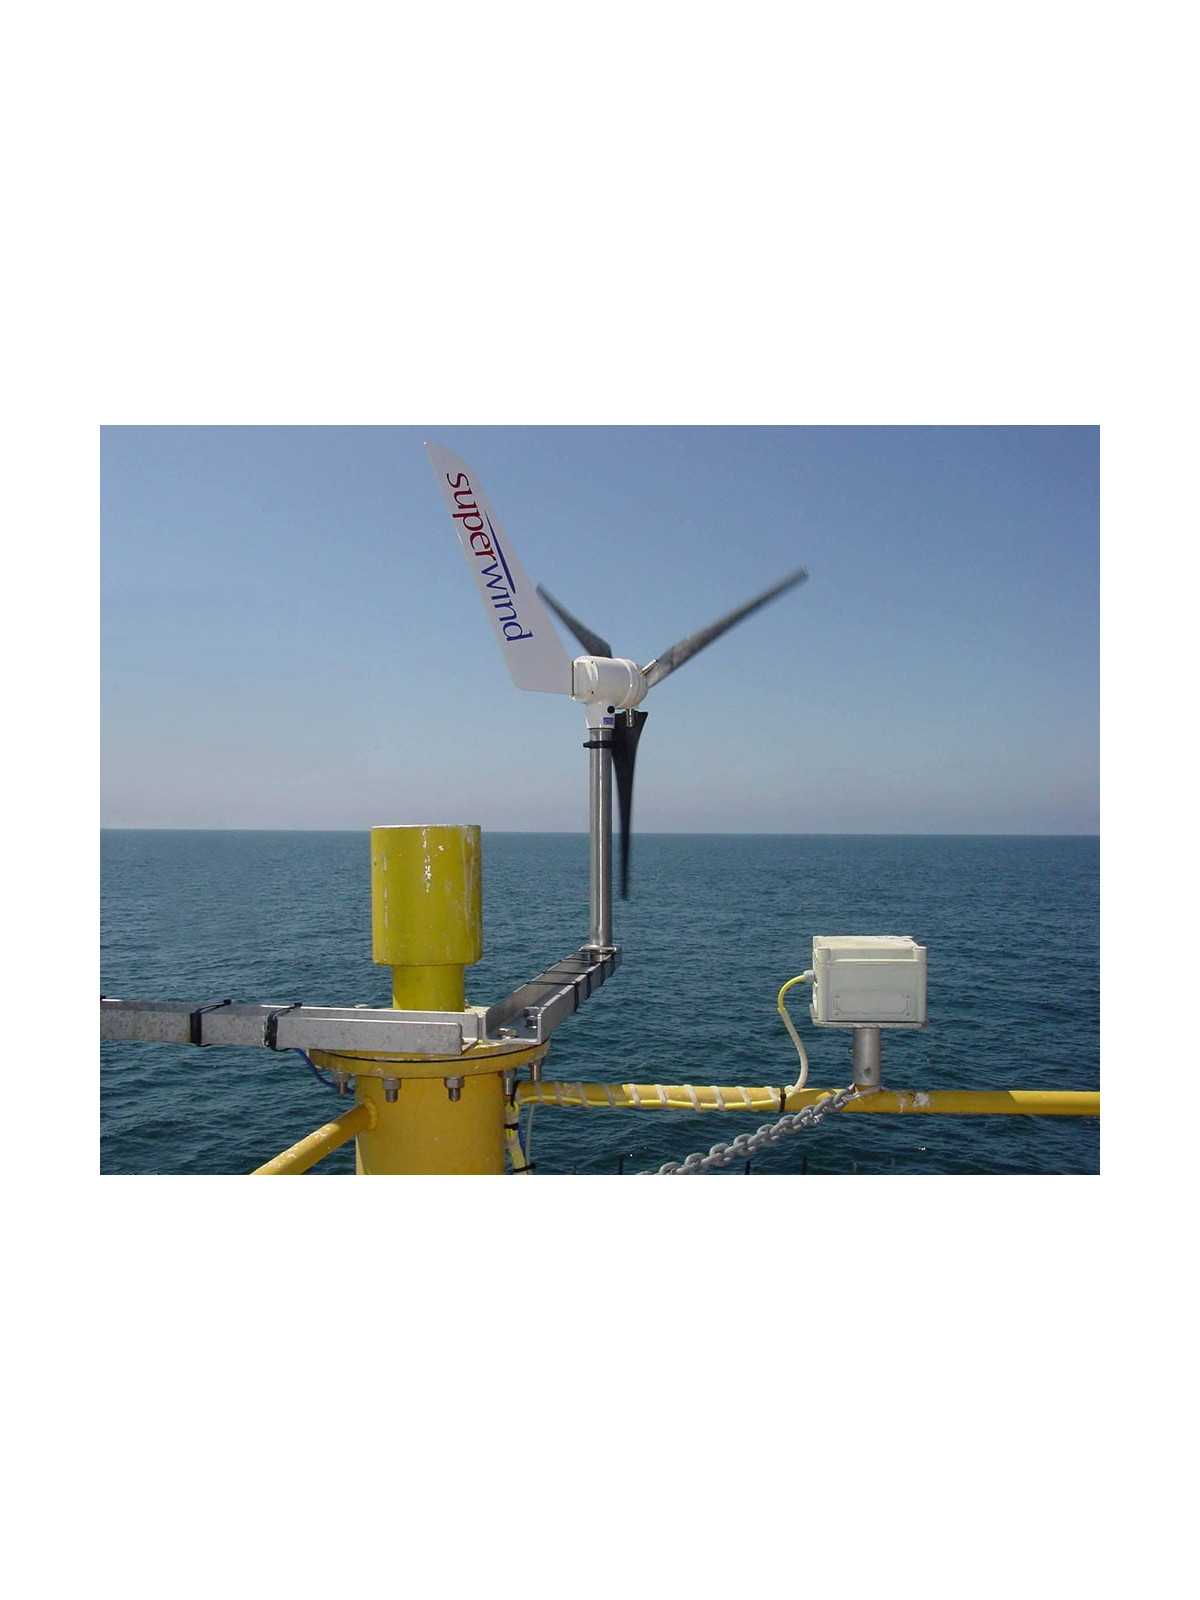 Superwind 350W 12V wind turbine